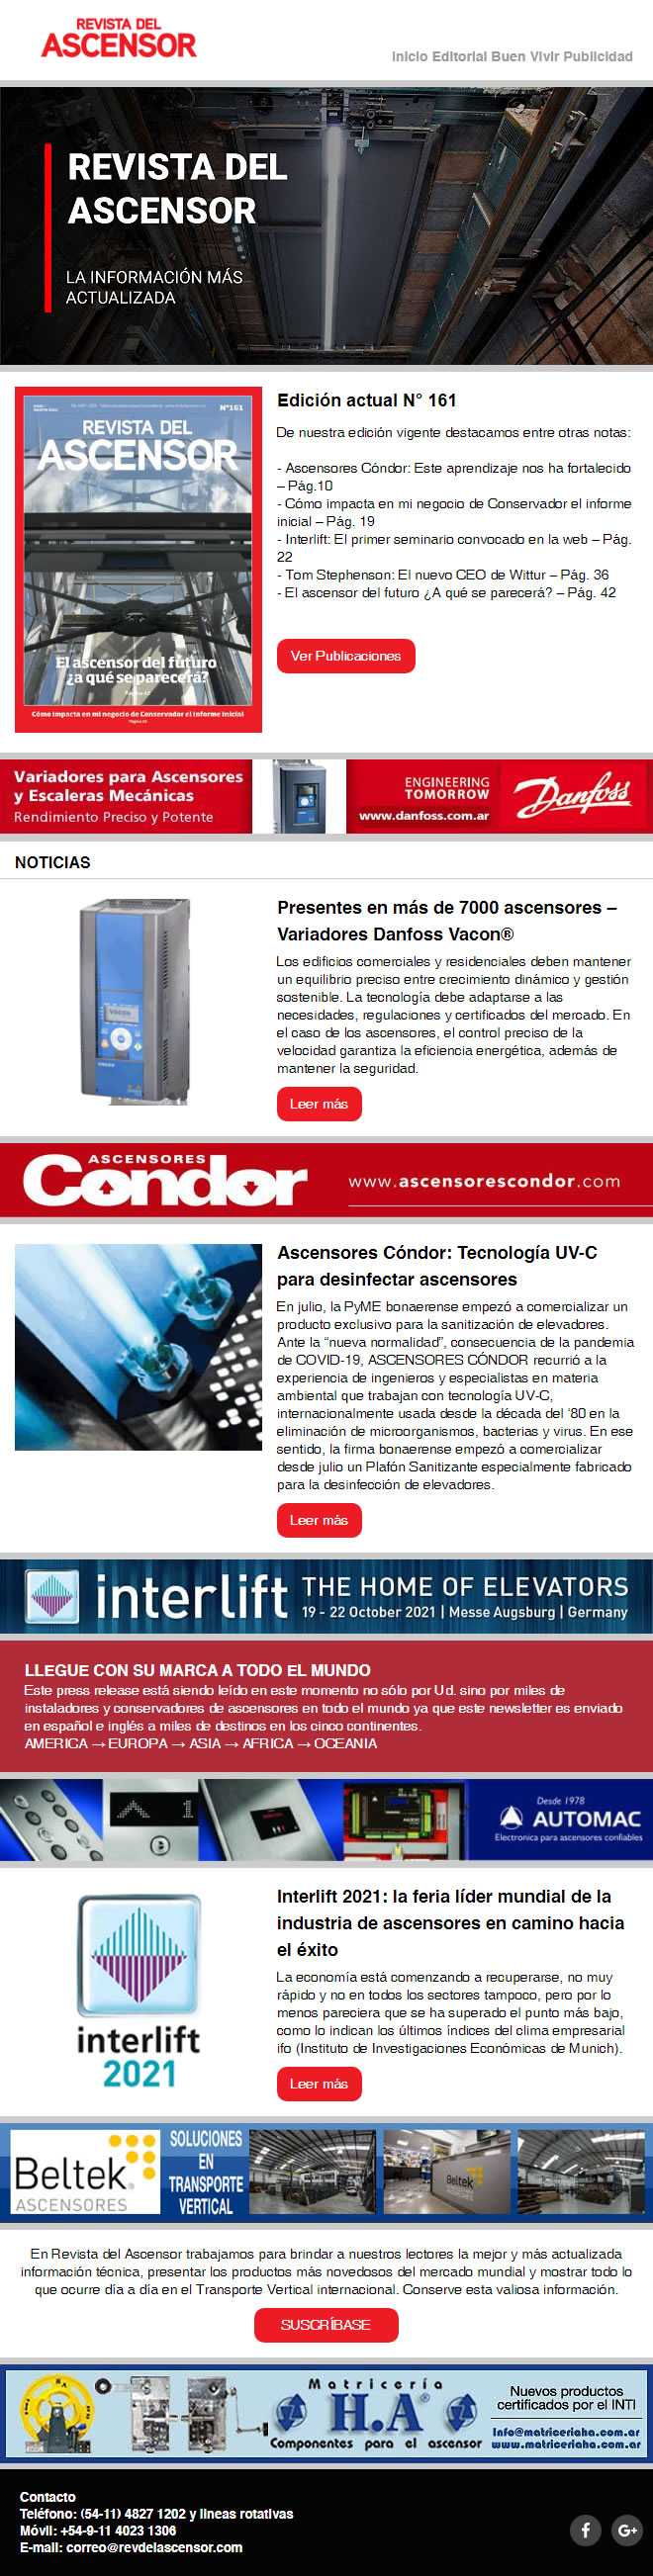 Presentes en más de 7000 ascensores – Variadores Danfoss Vacon - Ascensores Cóndor: Tecnología UV-C para desinfectar ascensores - Interlift 2021